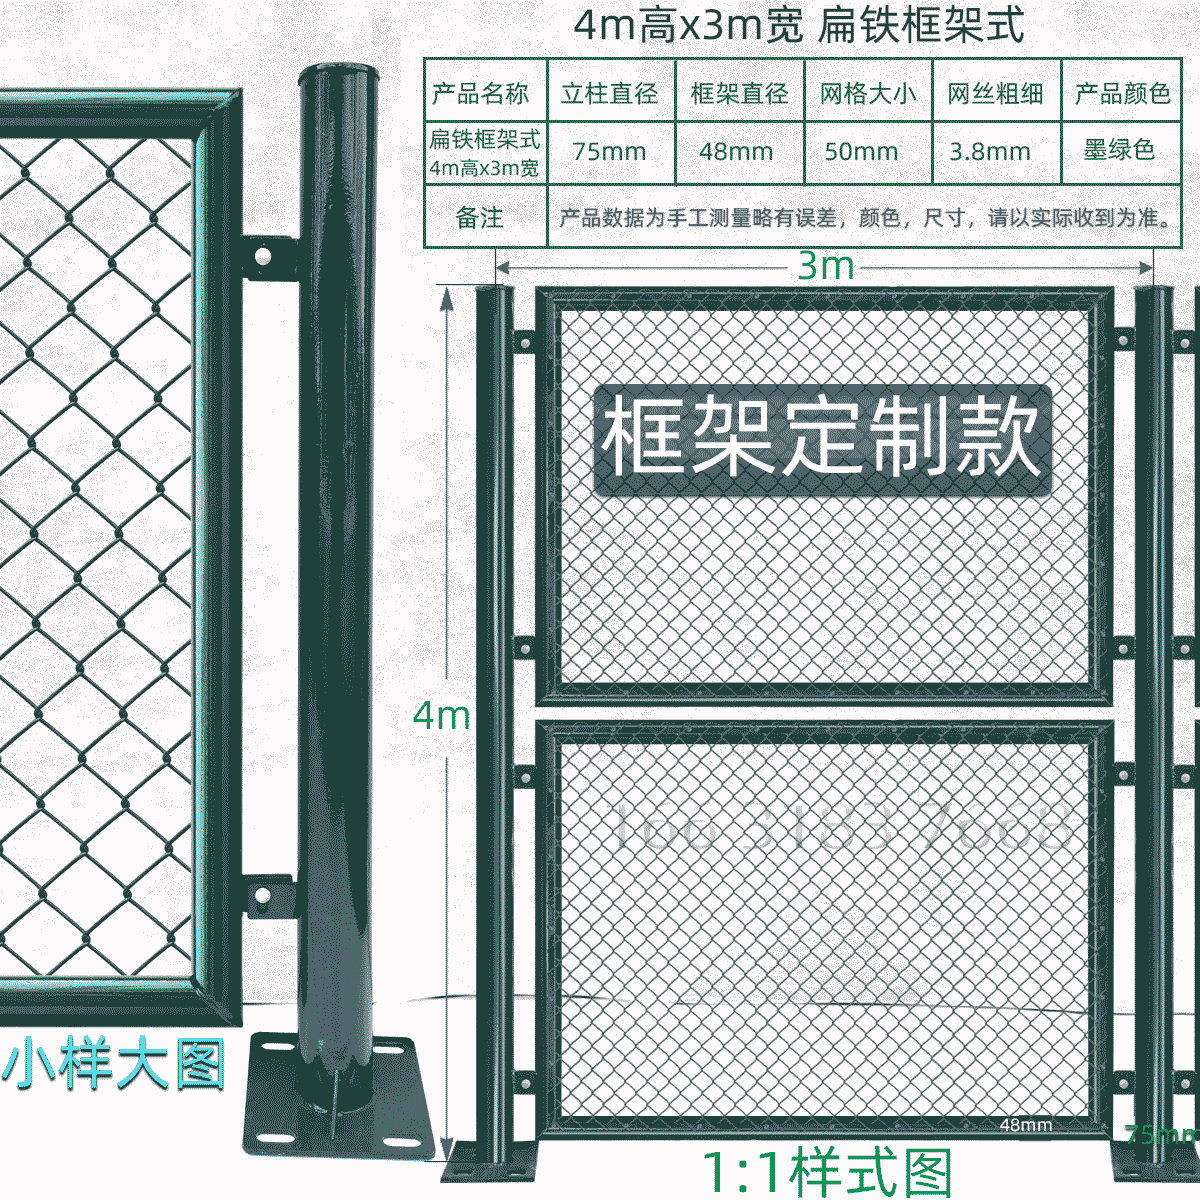 4m高x3m宽扁铁外镶框架式球场围栏网